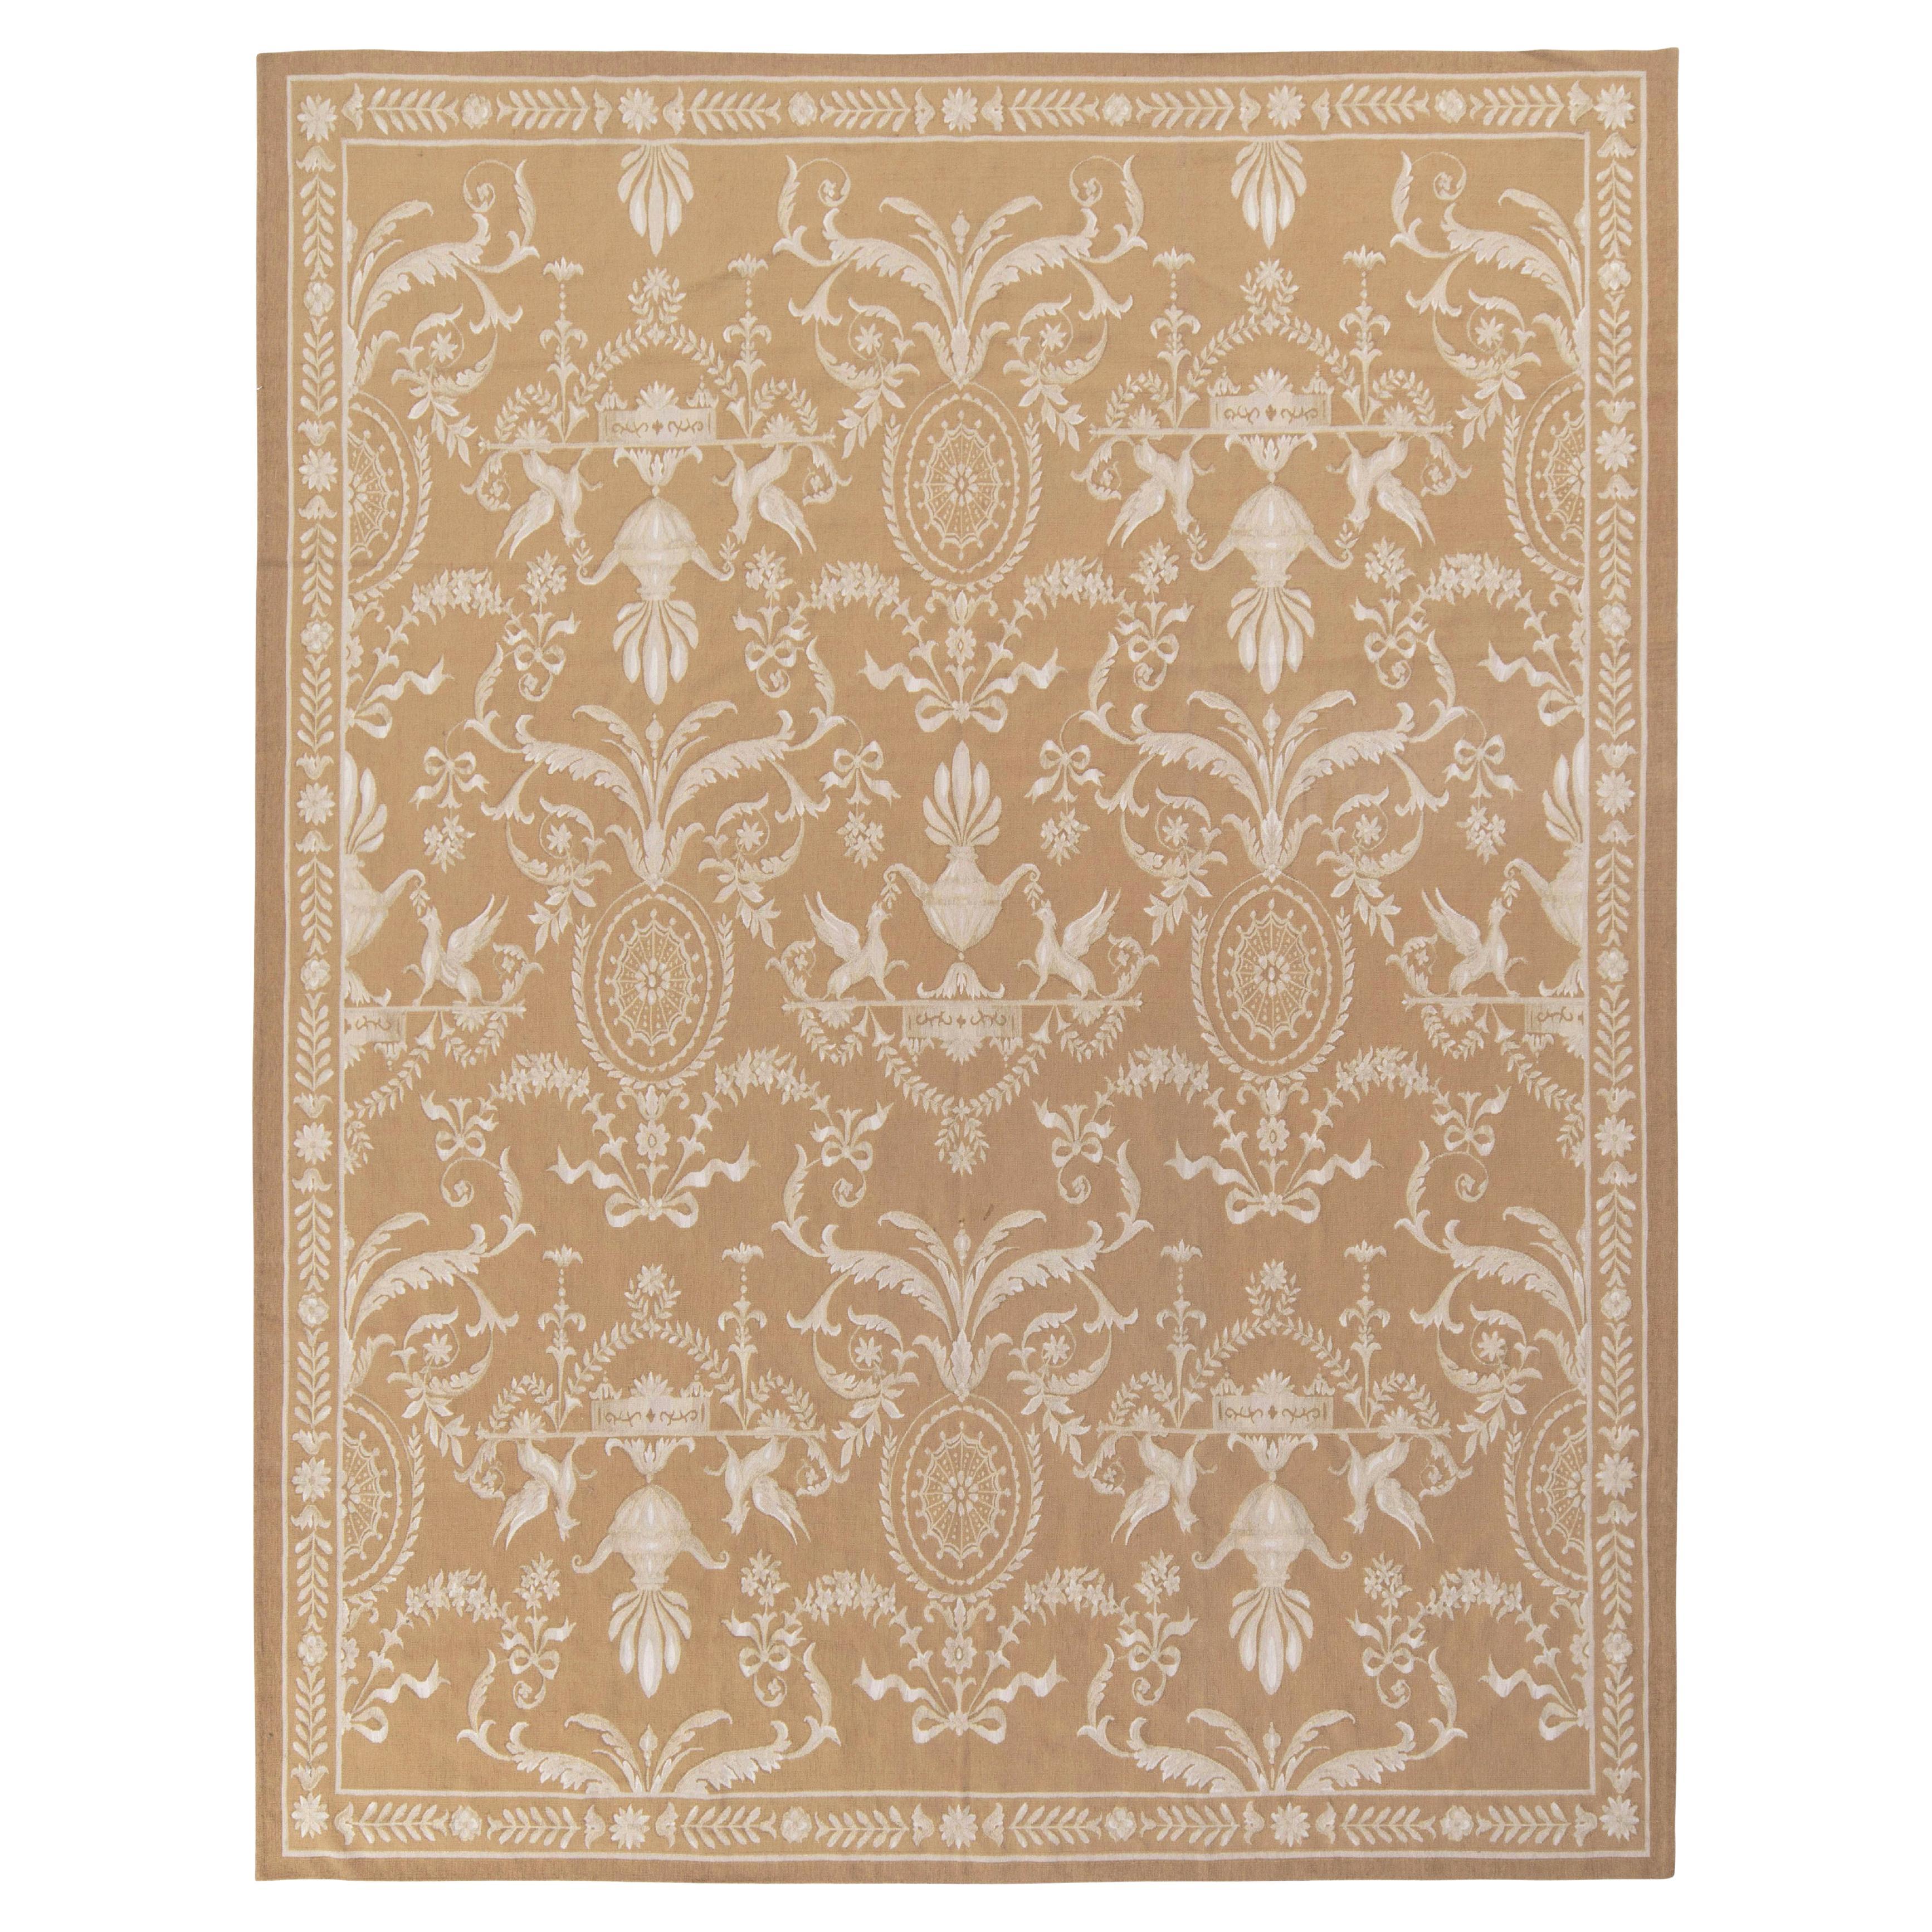 Flachgewebter Teppich im Aubusson-Stil mit beige-braunem, weißem Blumenmuster von Teppich & Kilims